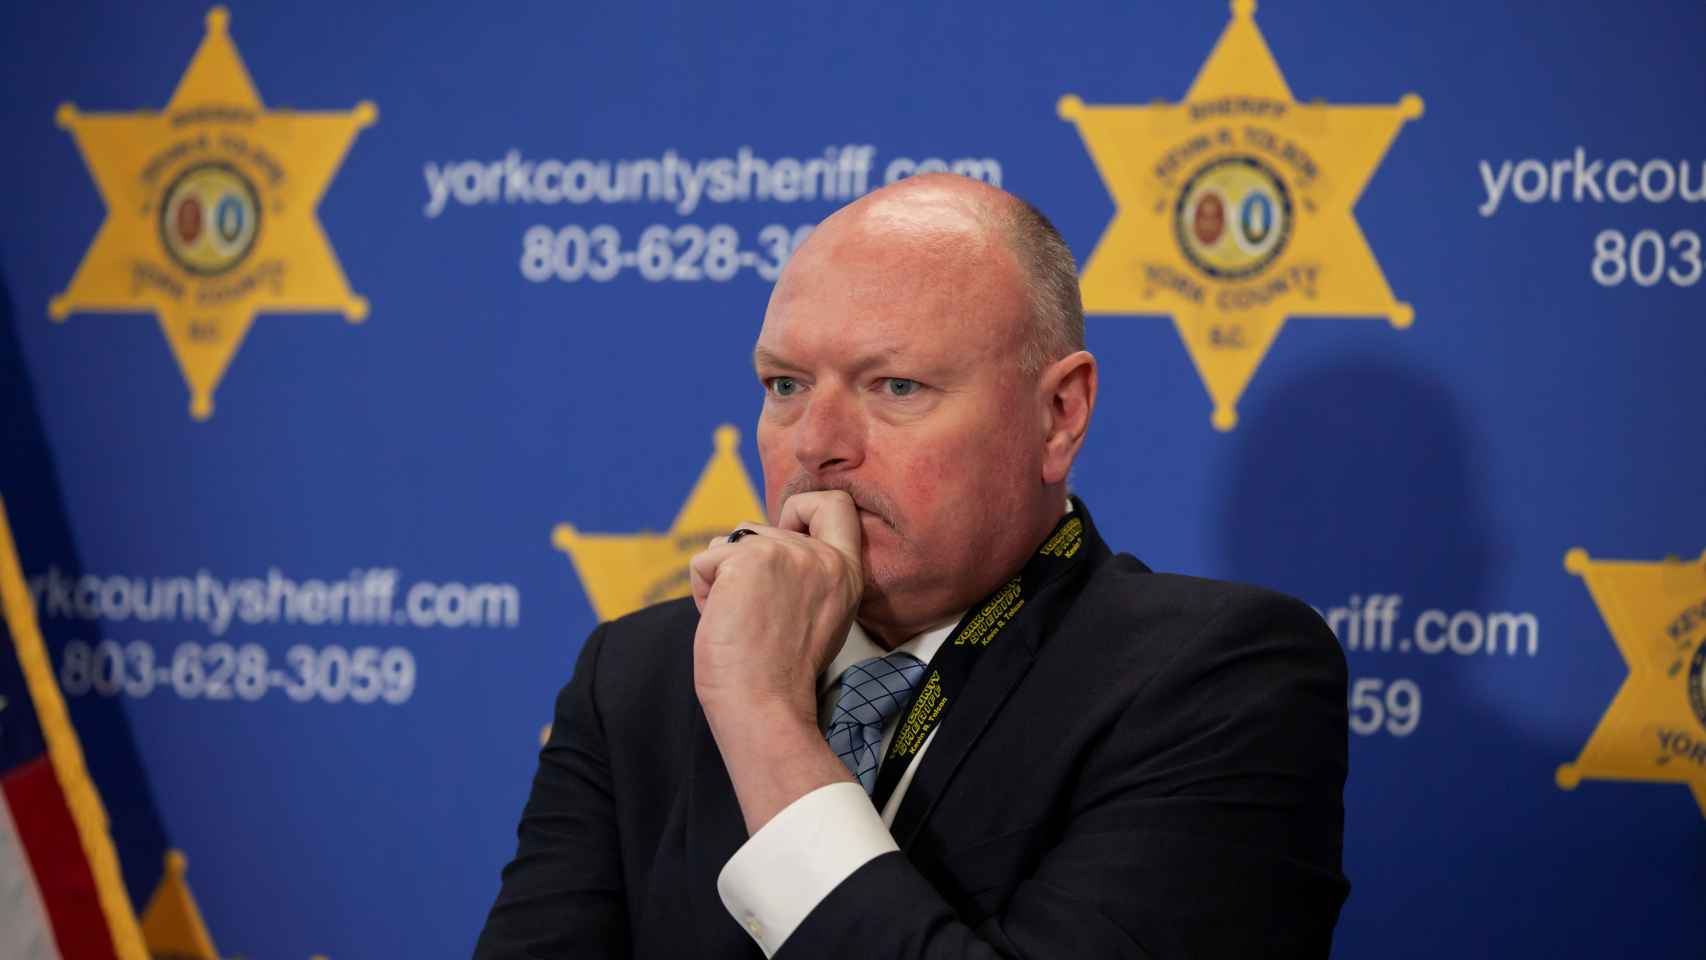 El sheriff del condado de York informando del caso de Phillip Adams